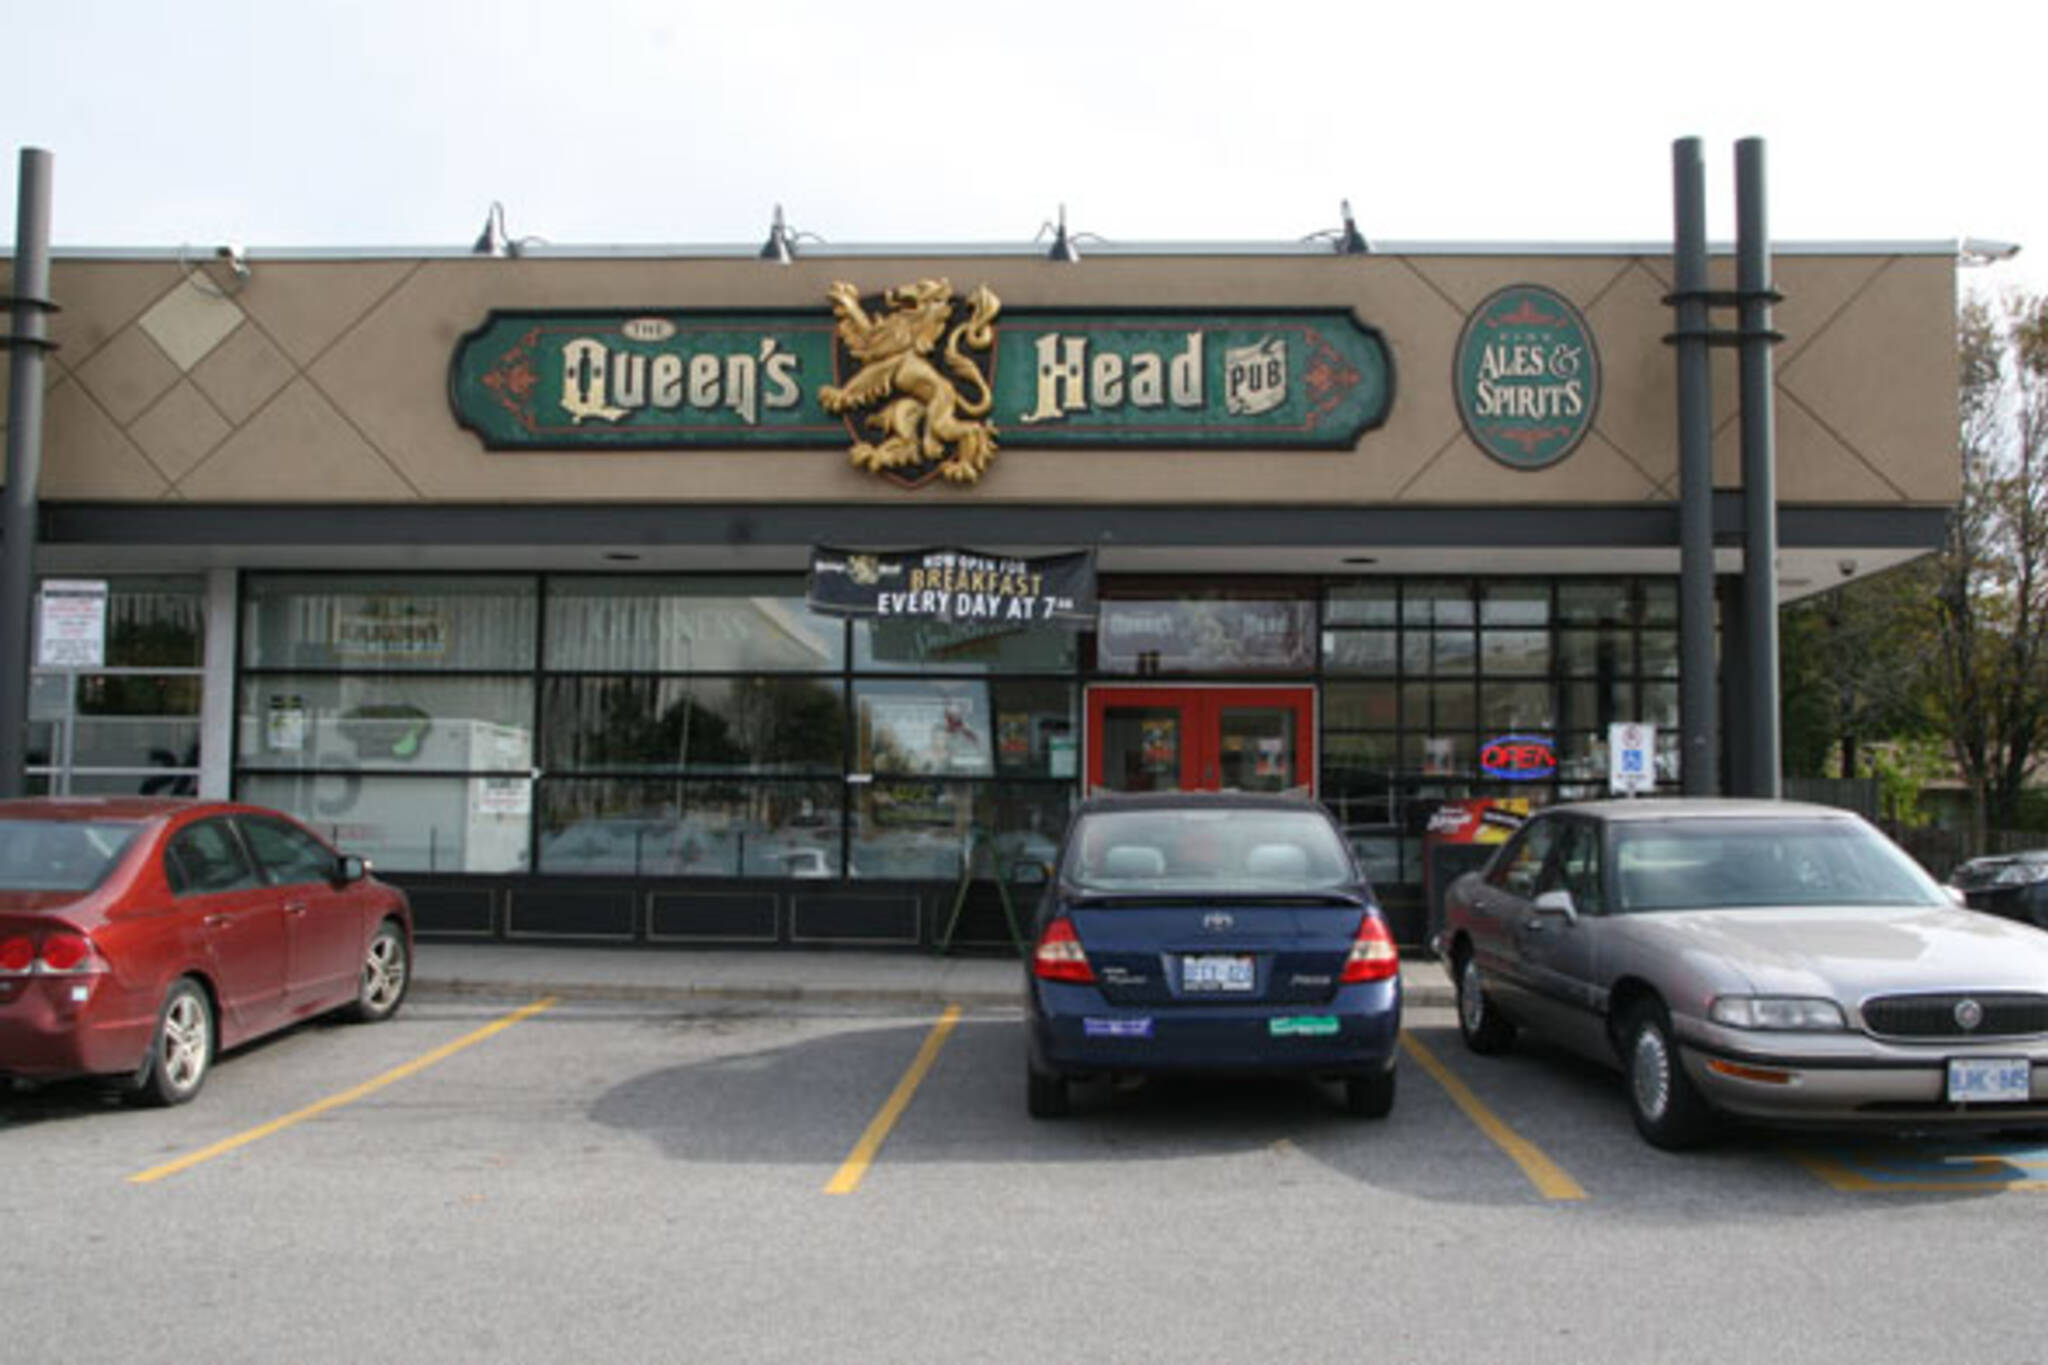 The Queenshead Pub (Scarborough) Toronto